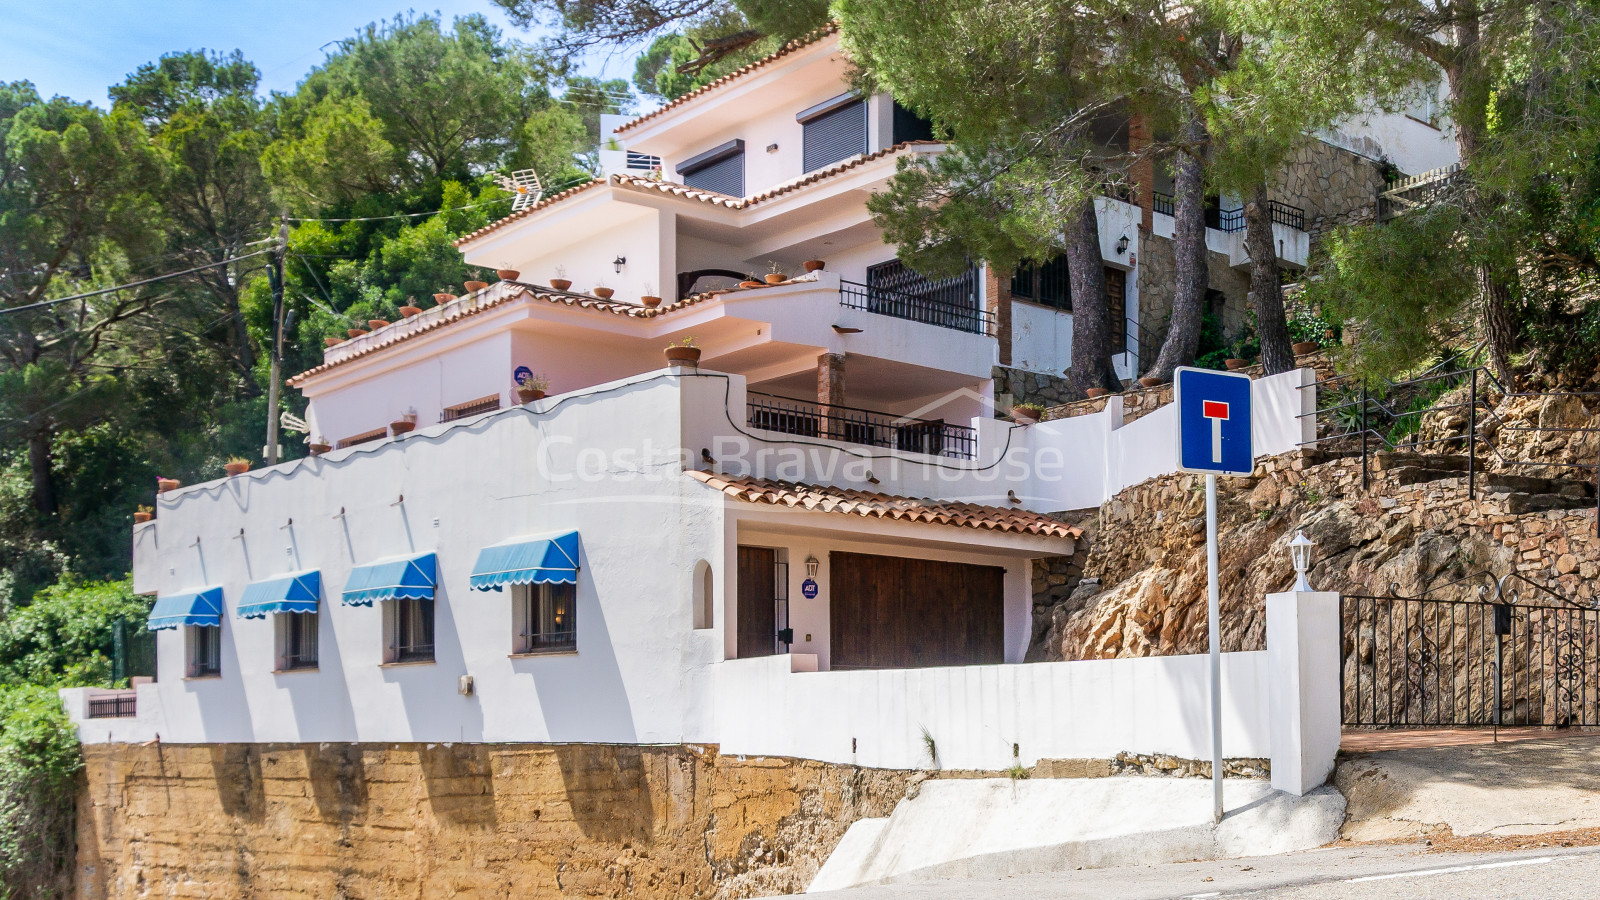 Dos apartaments separats que es poden unir en venda a mig camí entre platja Sa Tuna i Begur